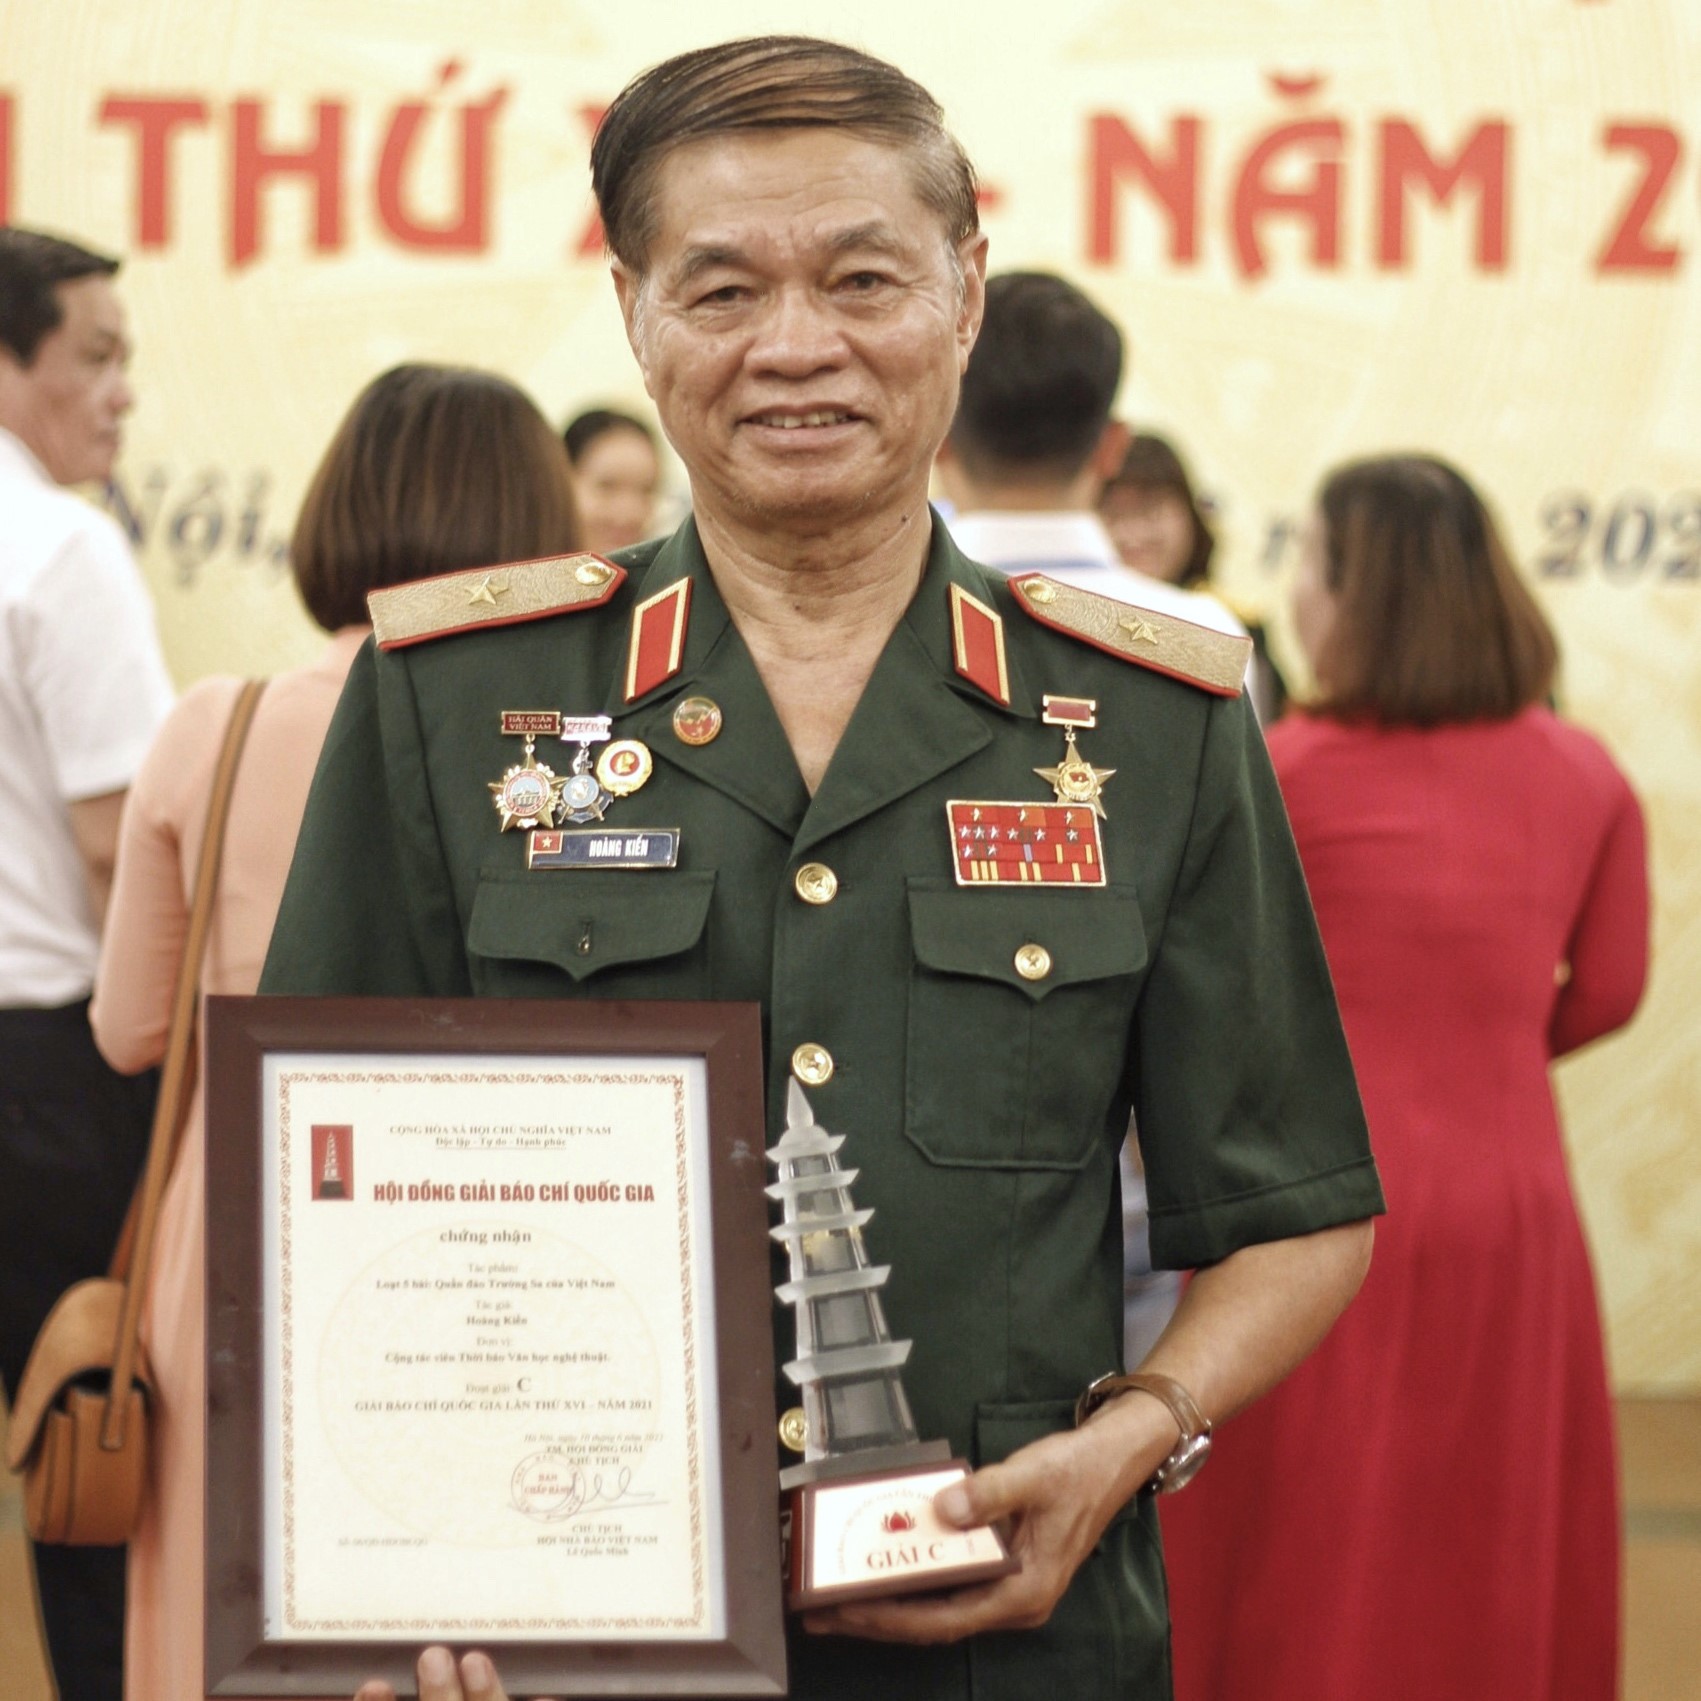 Thiếu tướng Hoàng Kiền: “Nhận giải Báo chí Quốc gia là niềm tự hào cho toàn thể đội ngũ cán bộ chiến sĩ Trường Sa” - 1